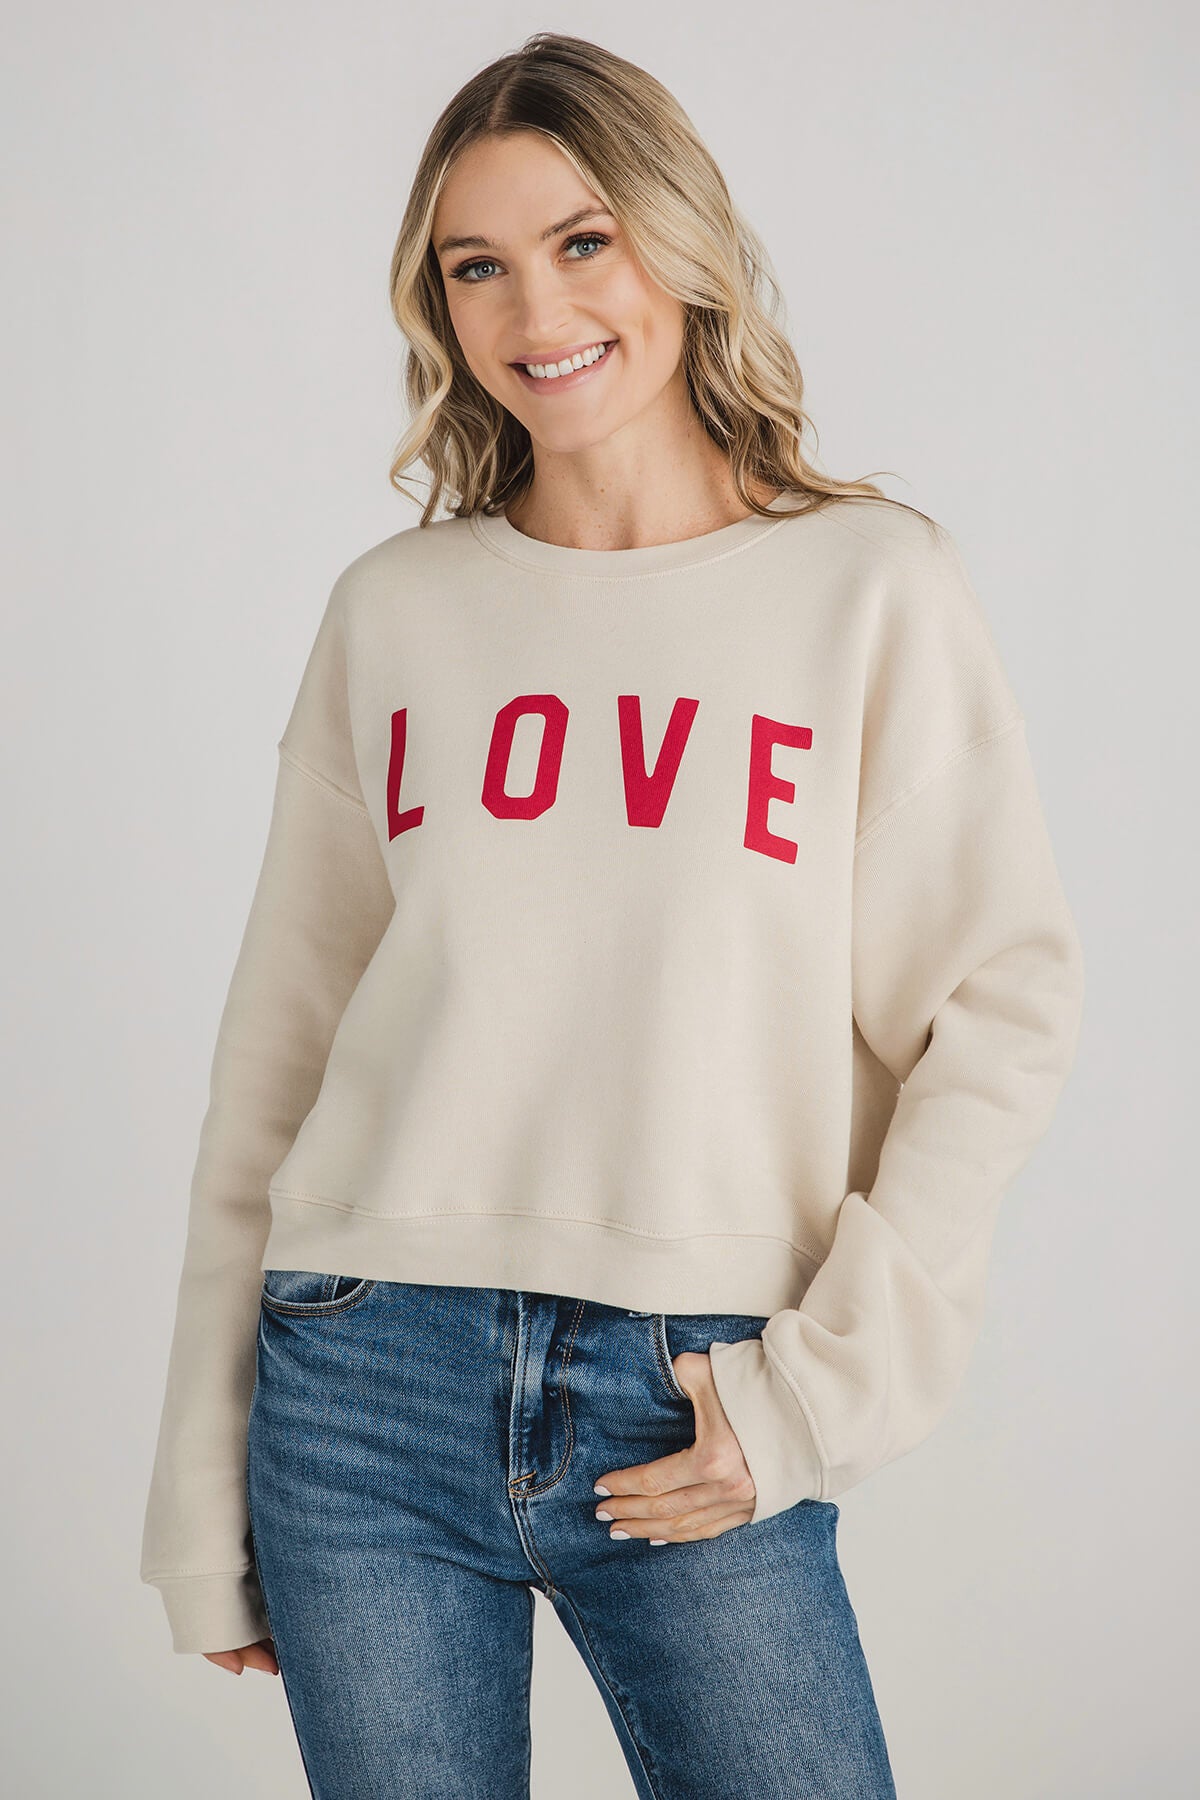 Oat Collective Love Sweatshirt